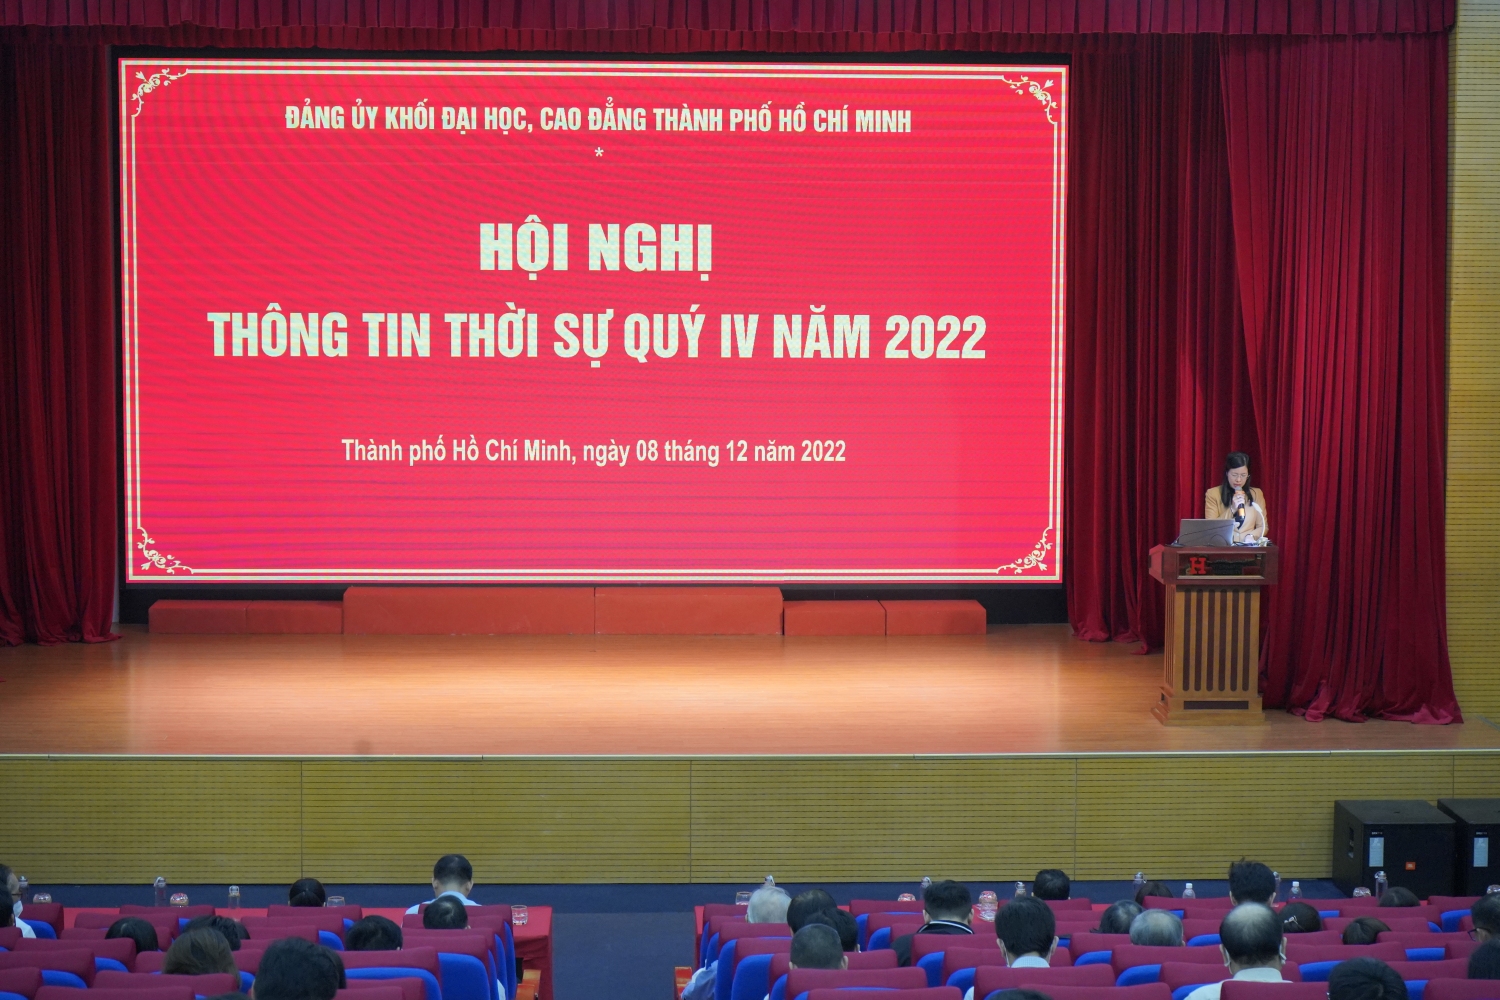 Đồng chí Nguyễn Thị Là – Phó Bí thư Thường trực Đảng ủy Khối phát biểu chỉ đạo tại Hội nghị